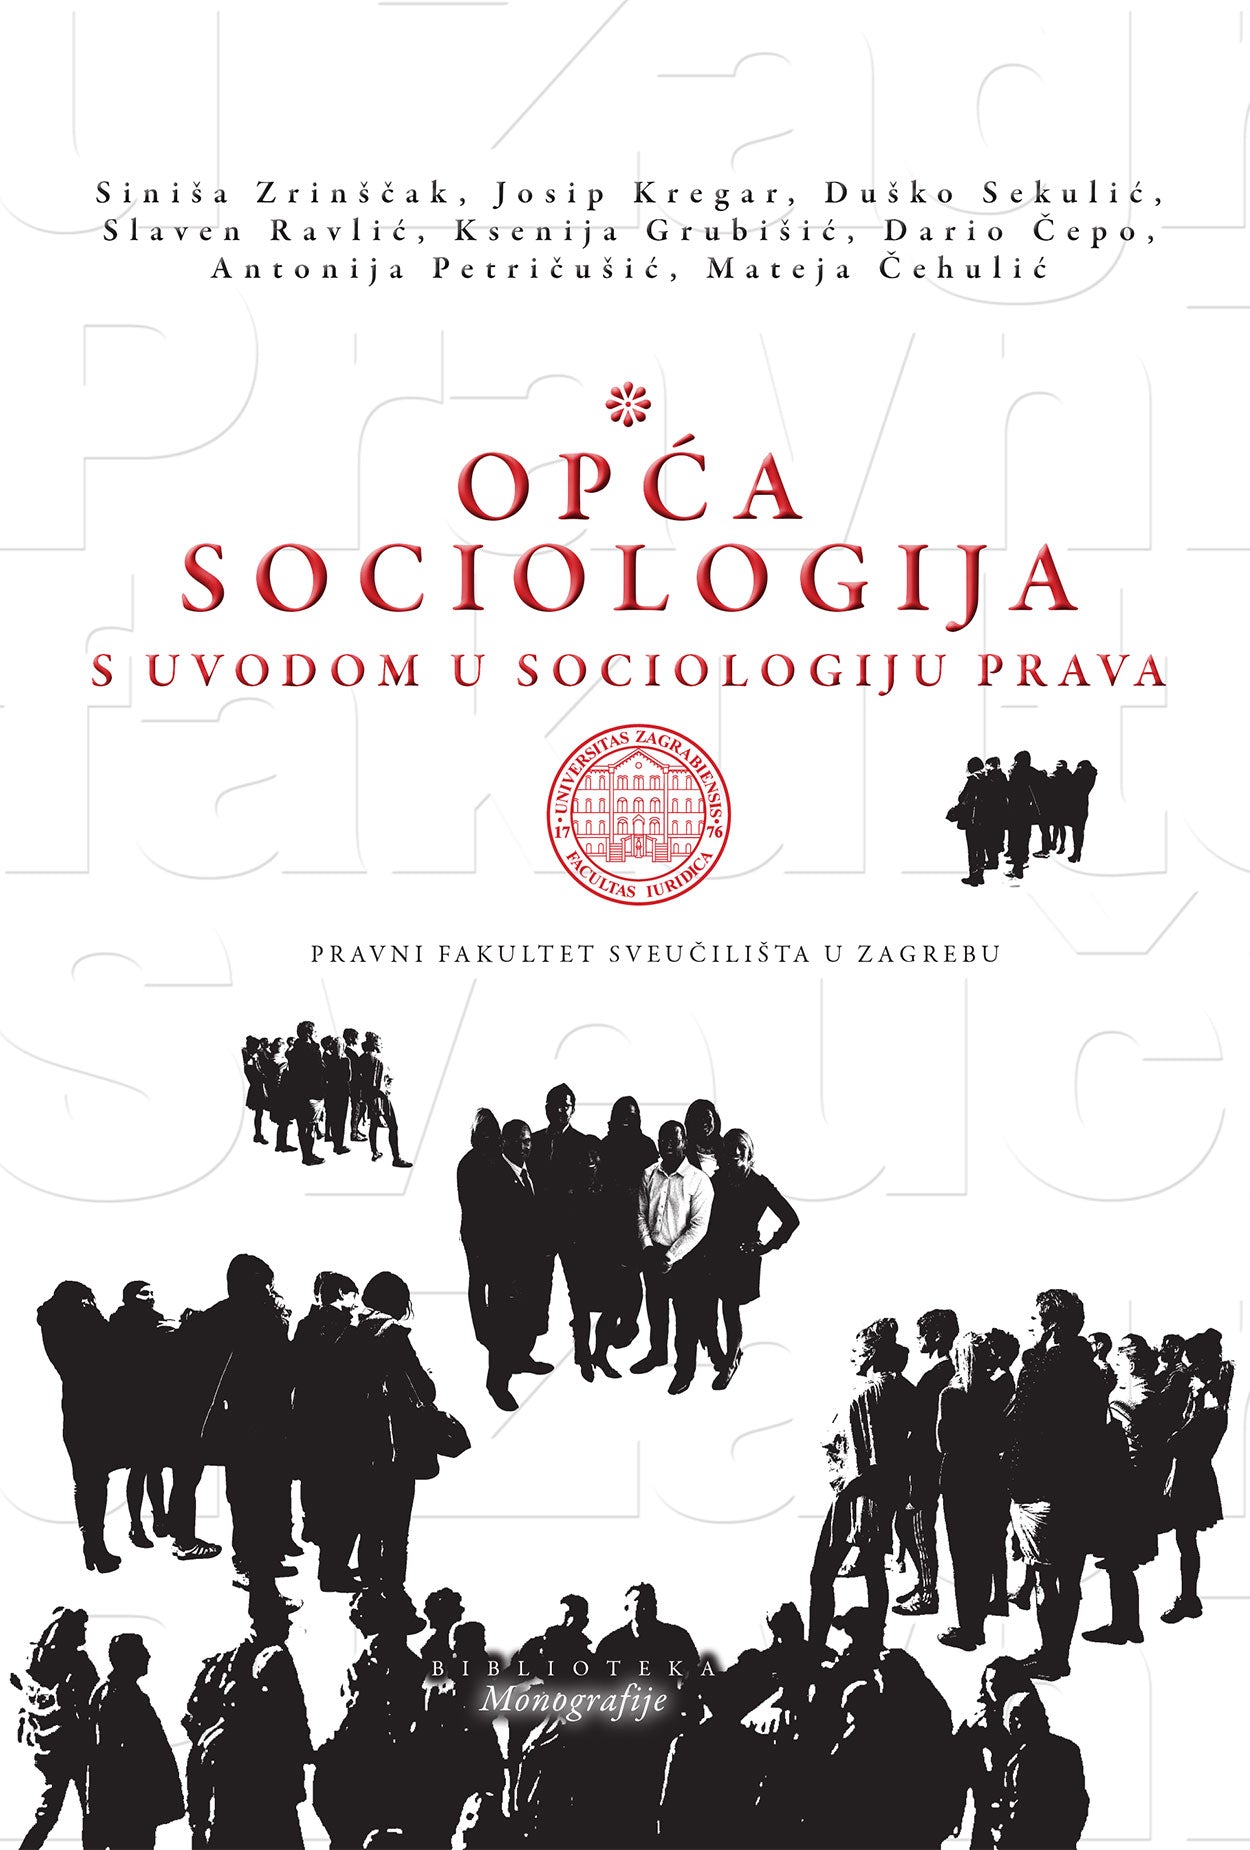 Opća sociologija: s uvodom u sociologiju prava - S. Zrinščak, J. Kregar, D. Sekulić, S. Ravlić, K. Grubišić, D. Čepo, A. Petričušić, M. Čehulić